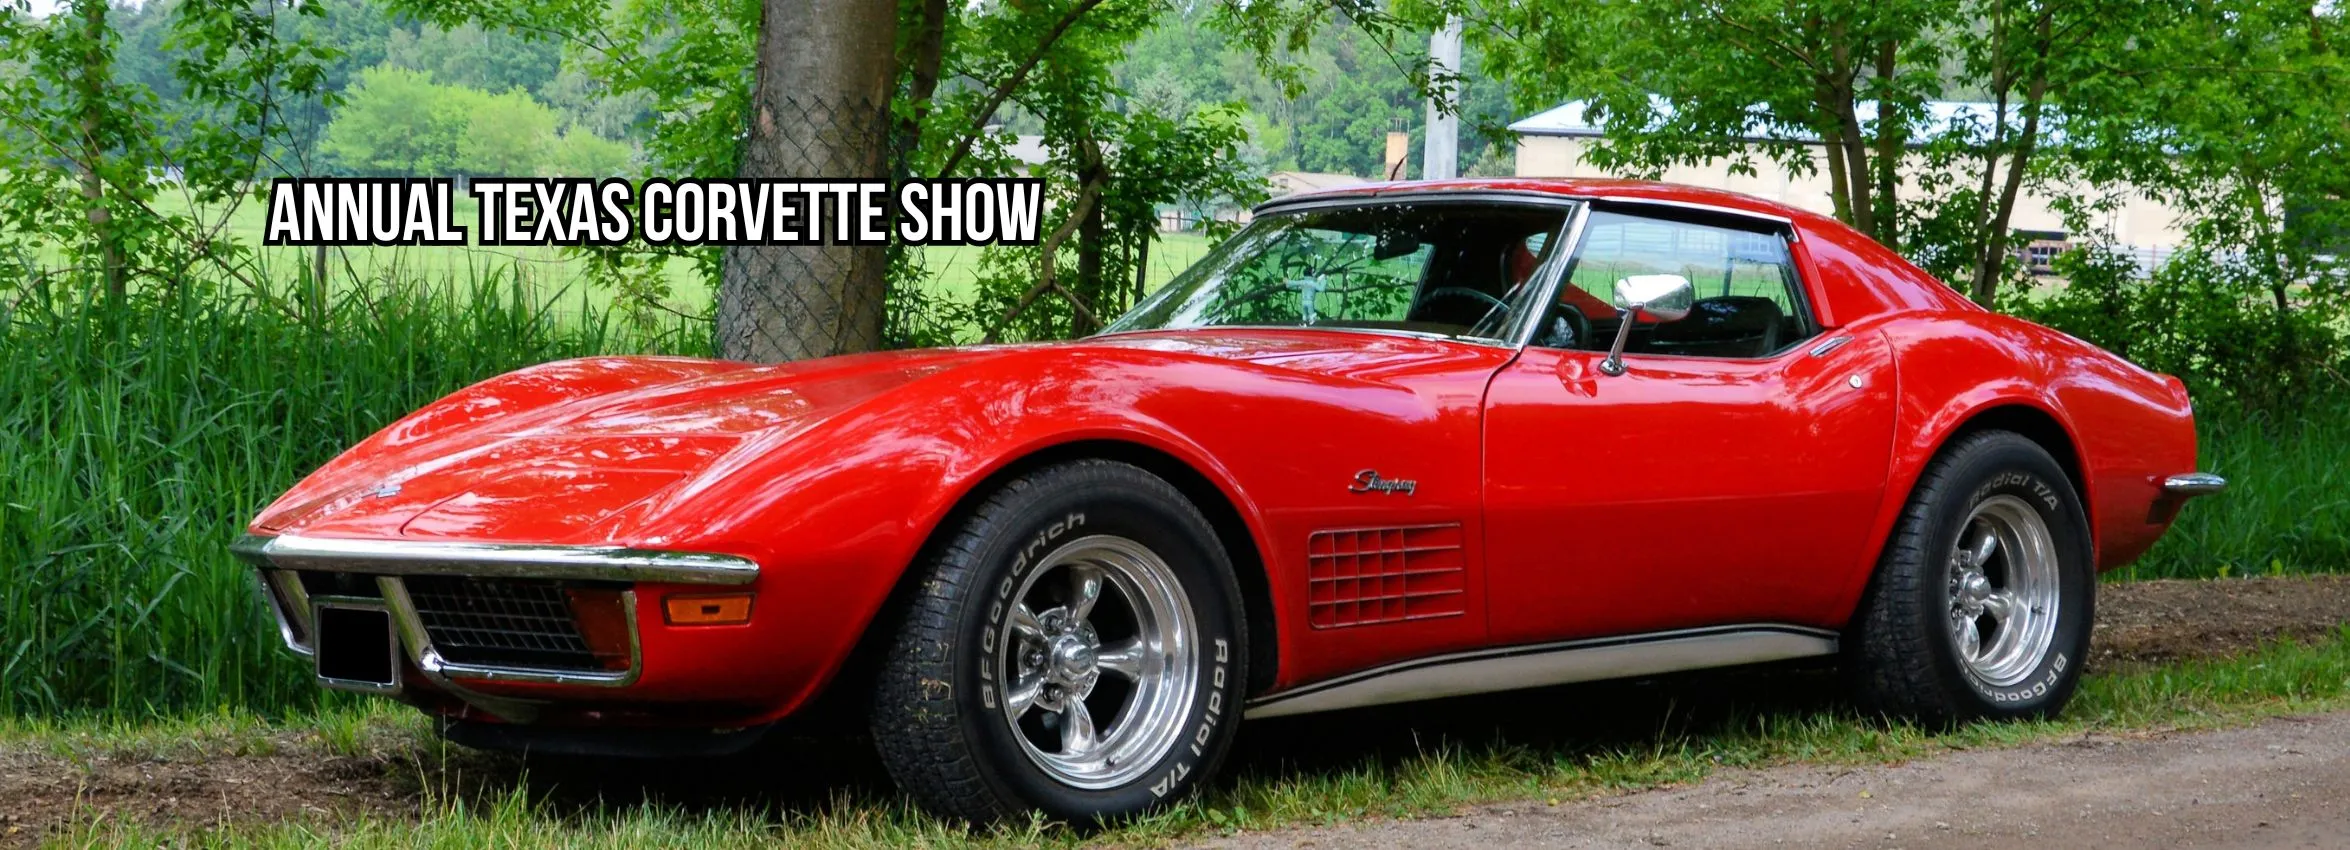 Annual-Texas-Corvette-Show_Desktop_ET